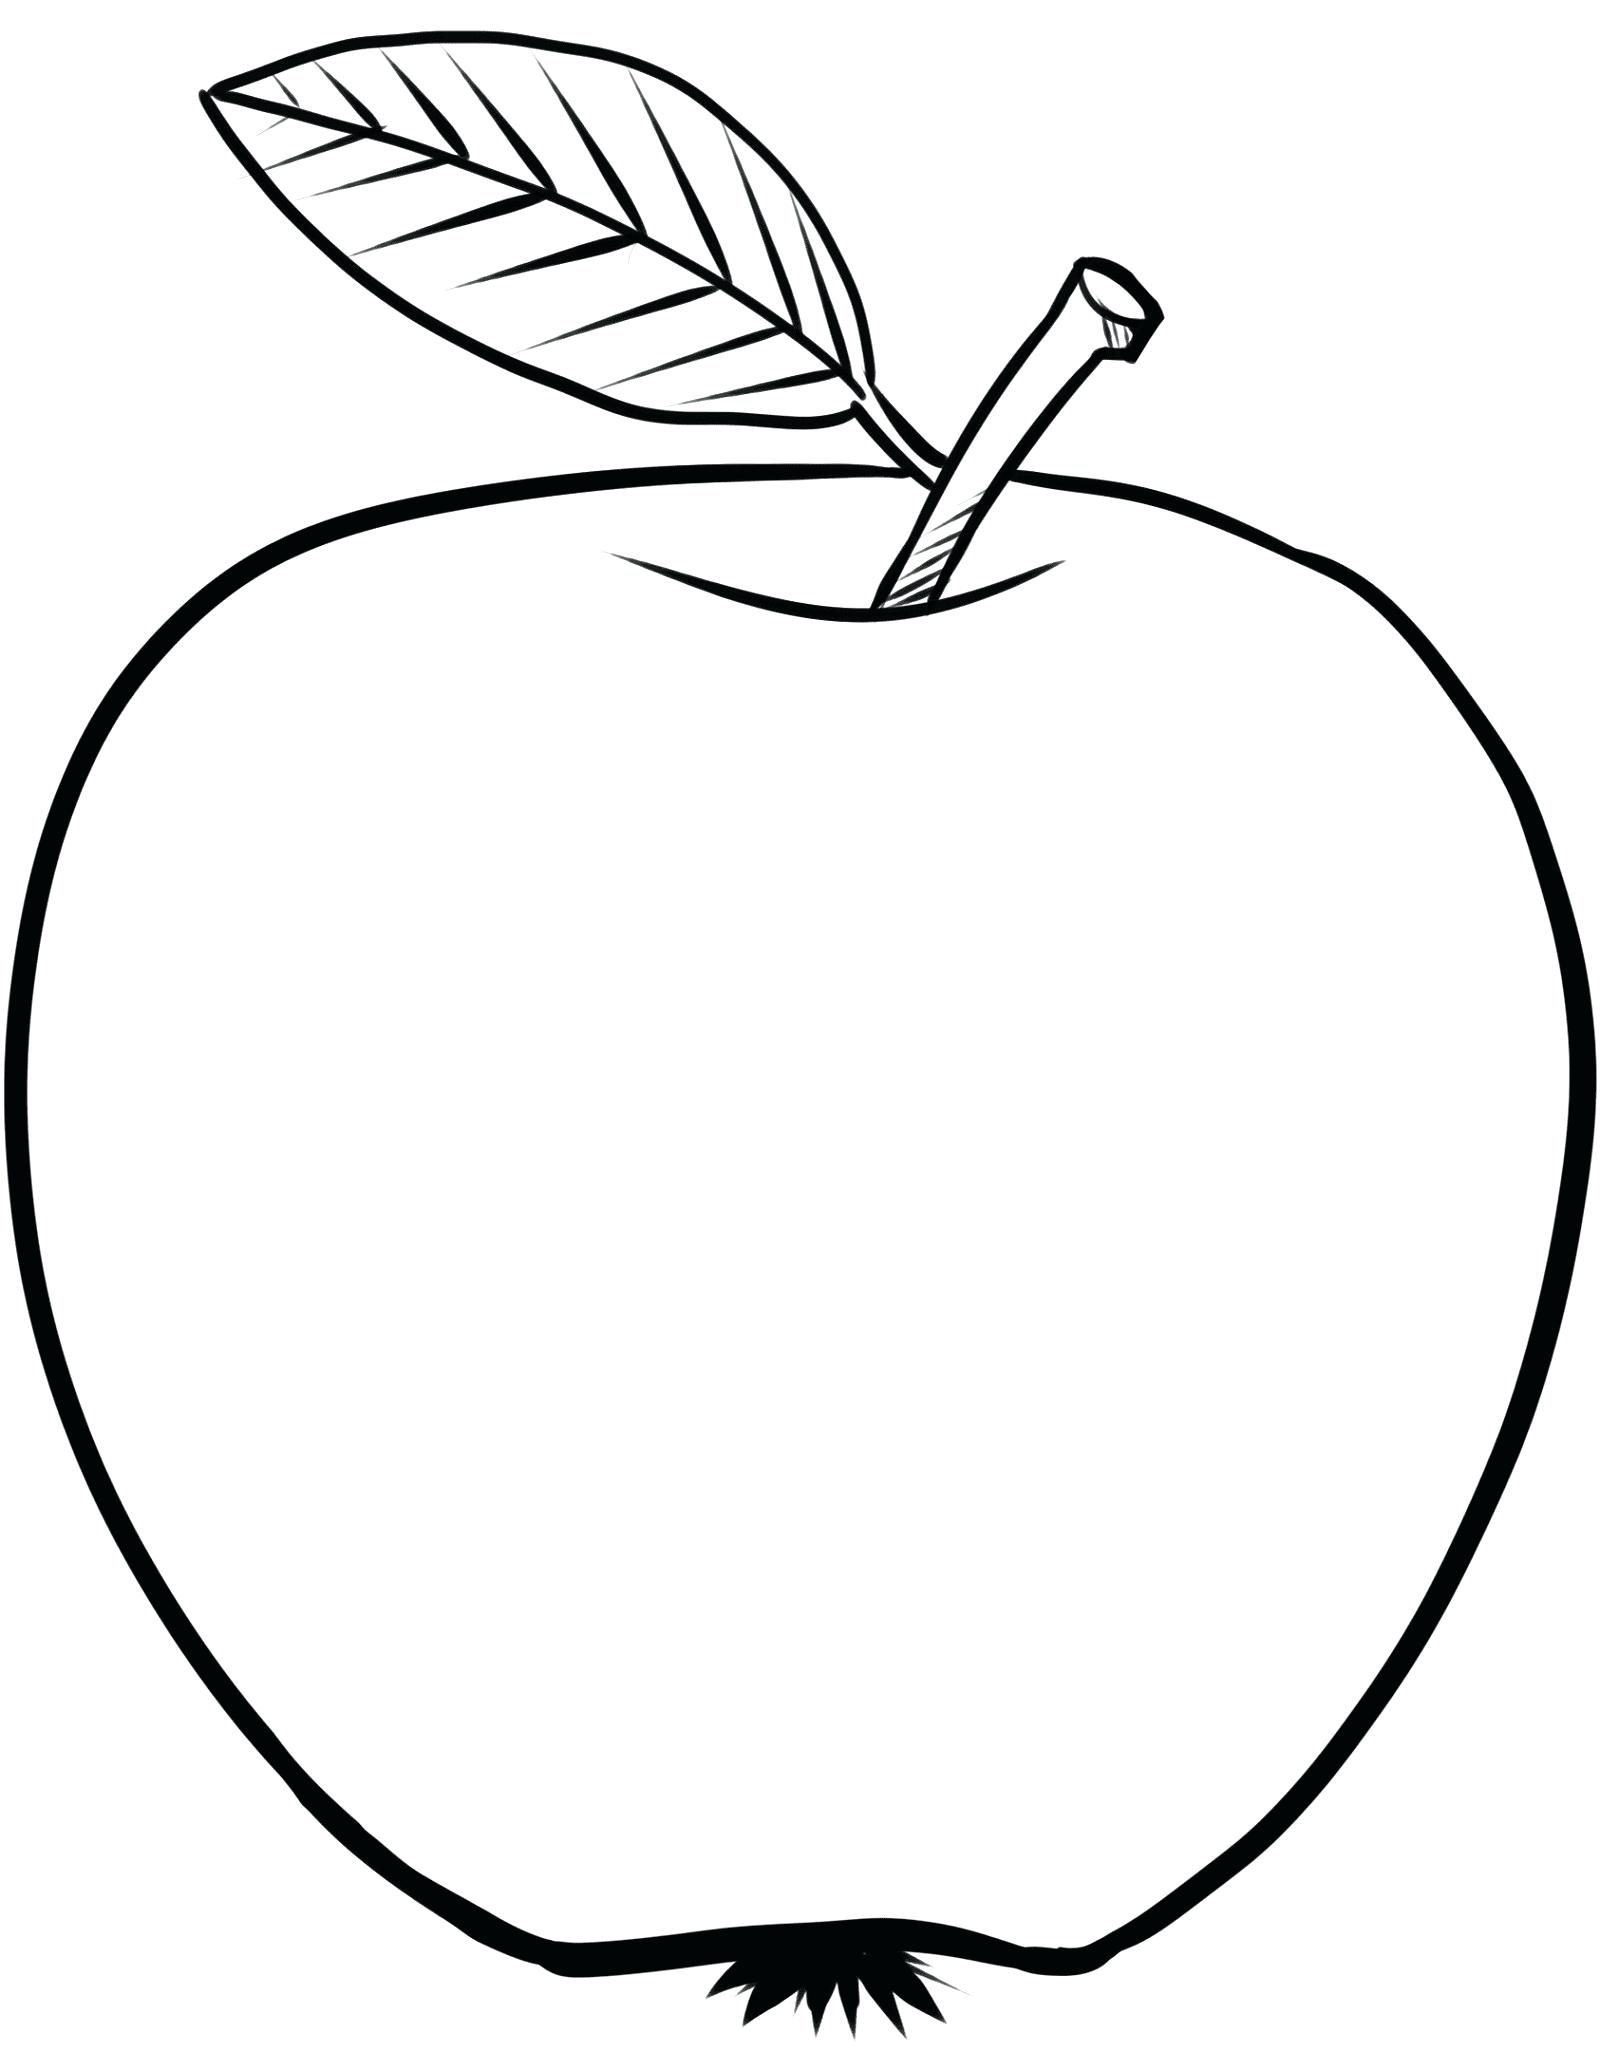 Vẽ quả táo sống động như thật  VnExpress